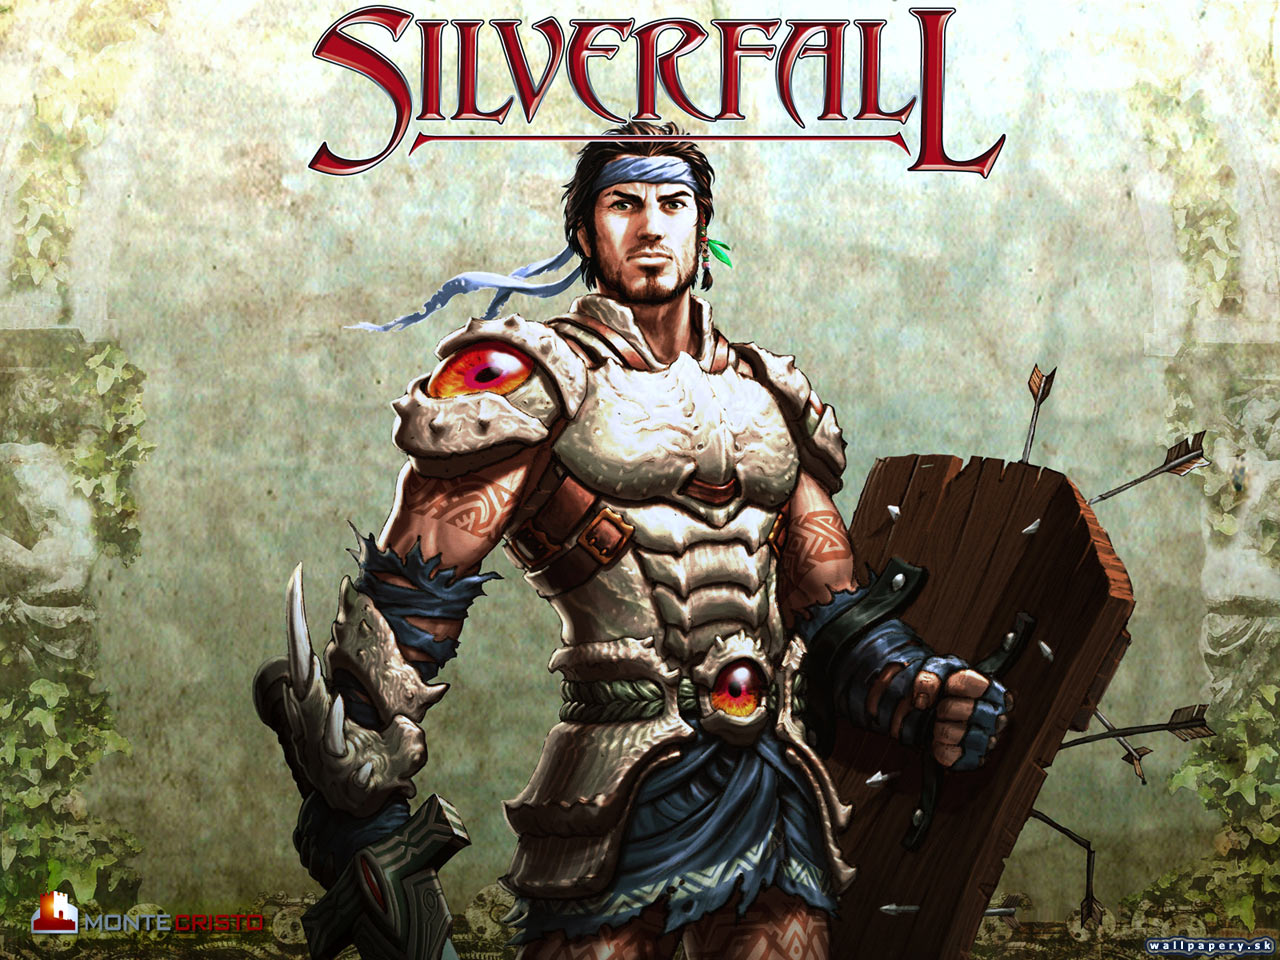 Silverfall - wallpaper 8